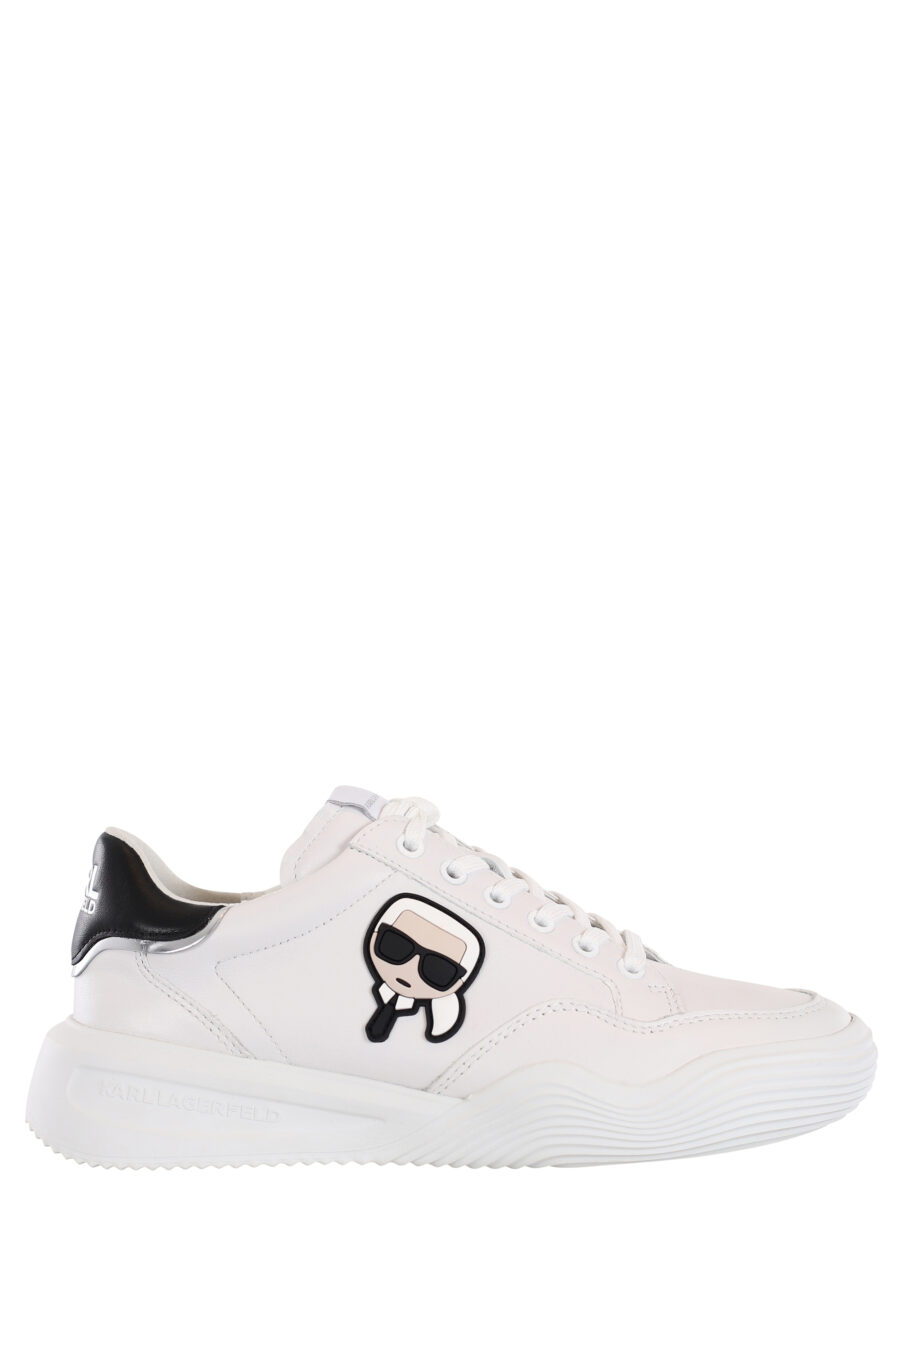 Zapatillas blancas con suela ondulada y logo de goma - IMG 0010